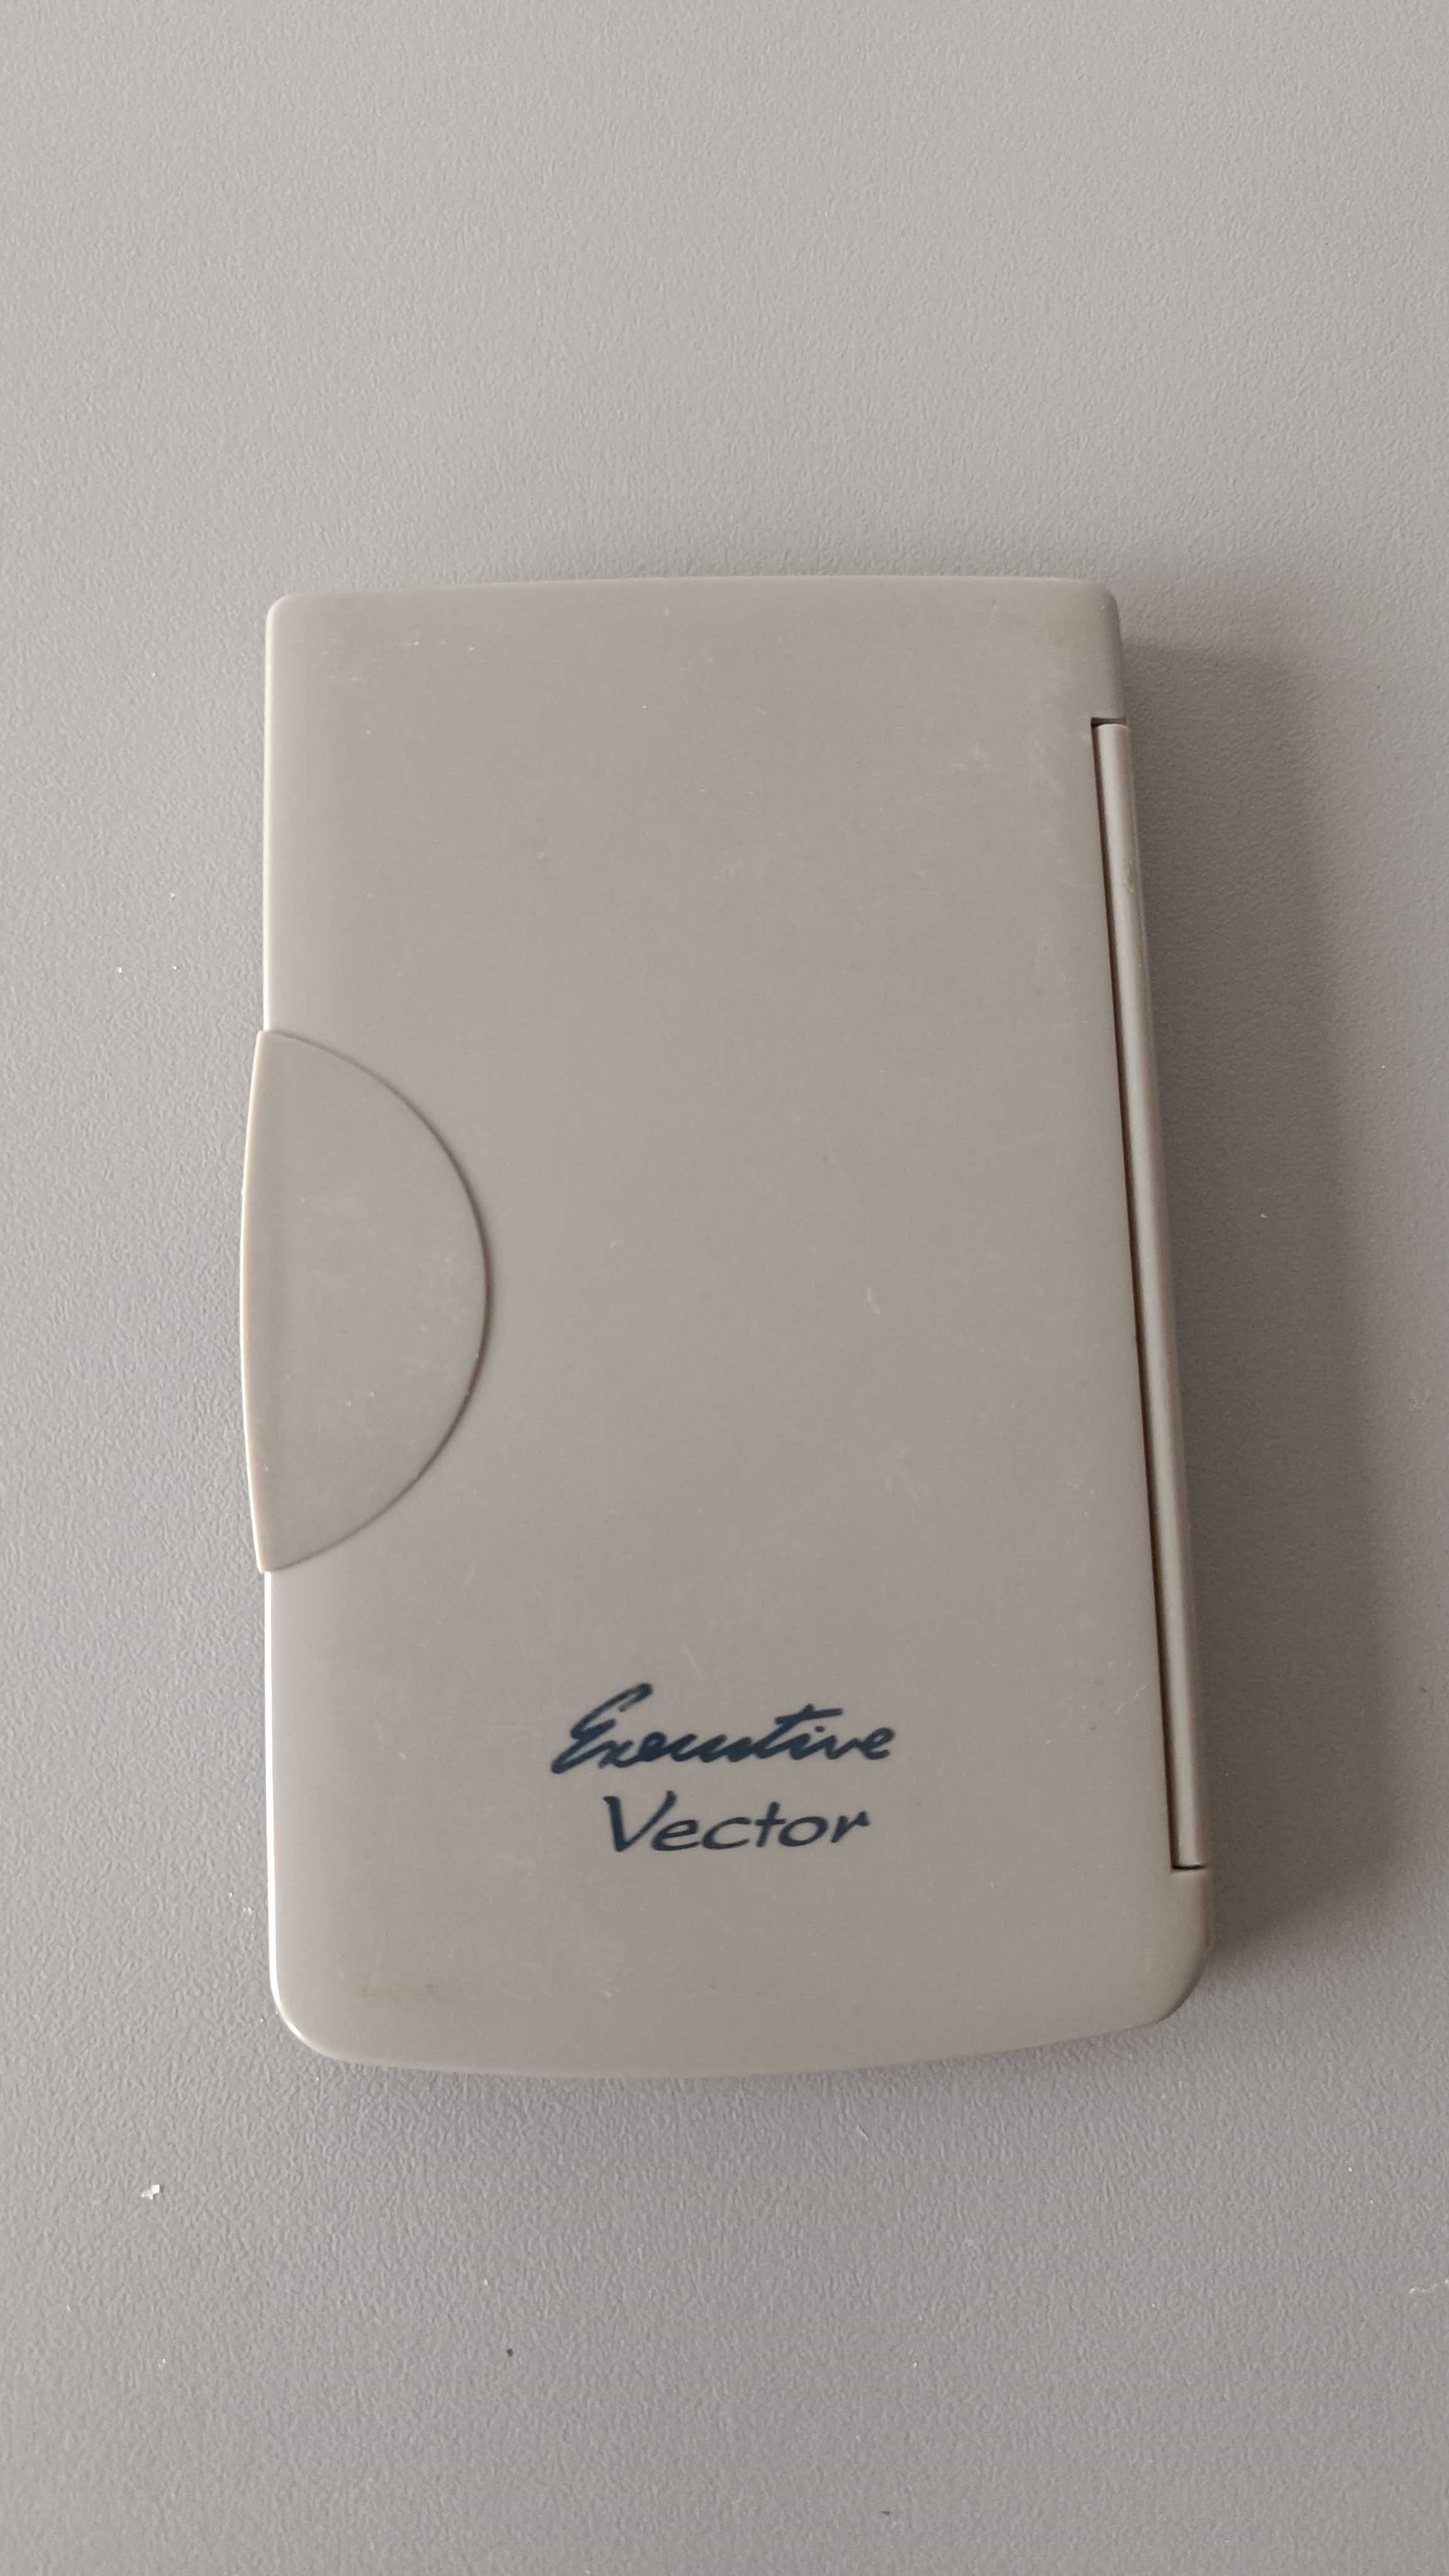 Kalkulator biurowy Vector DK-050